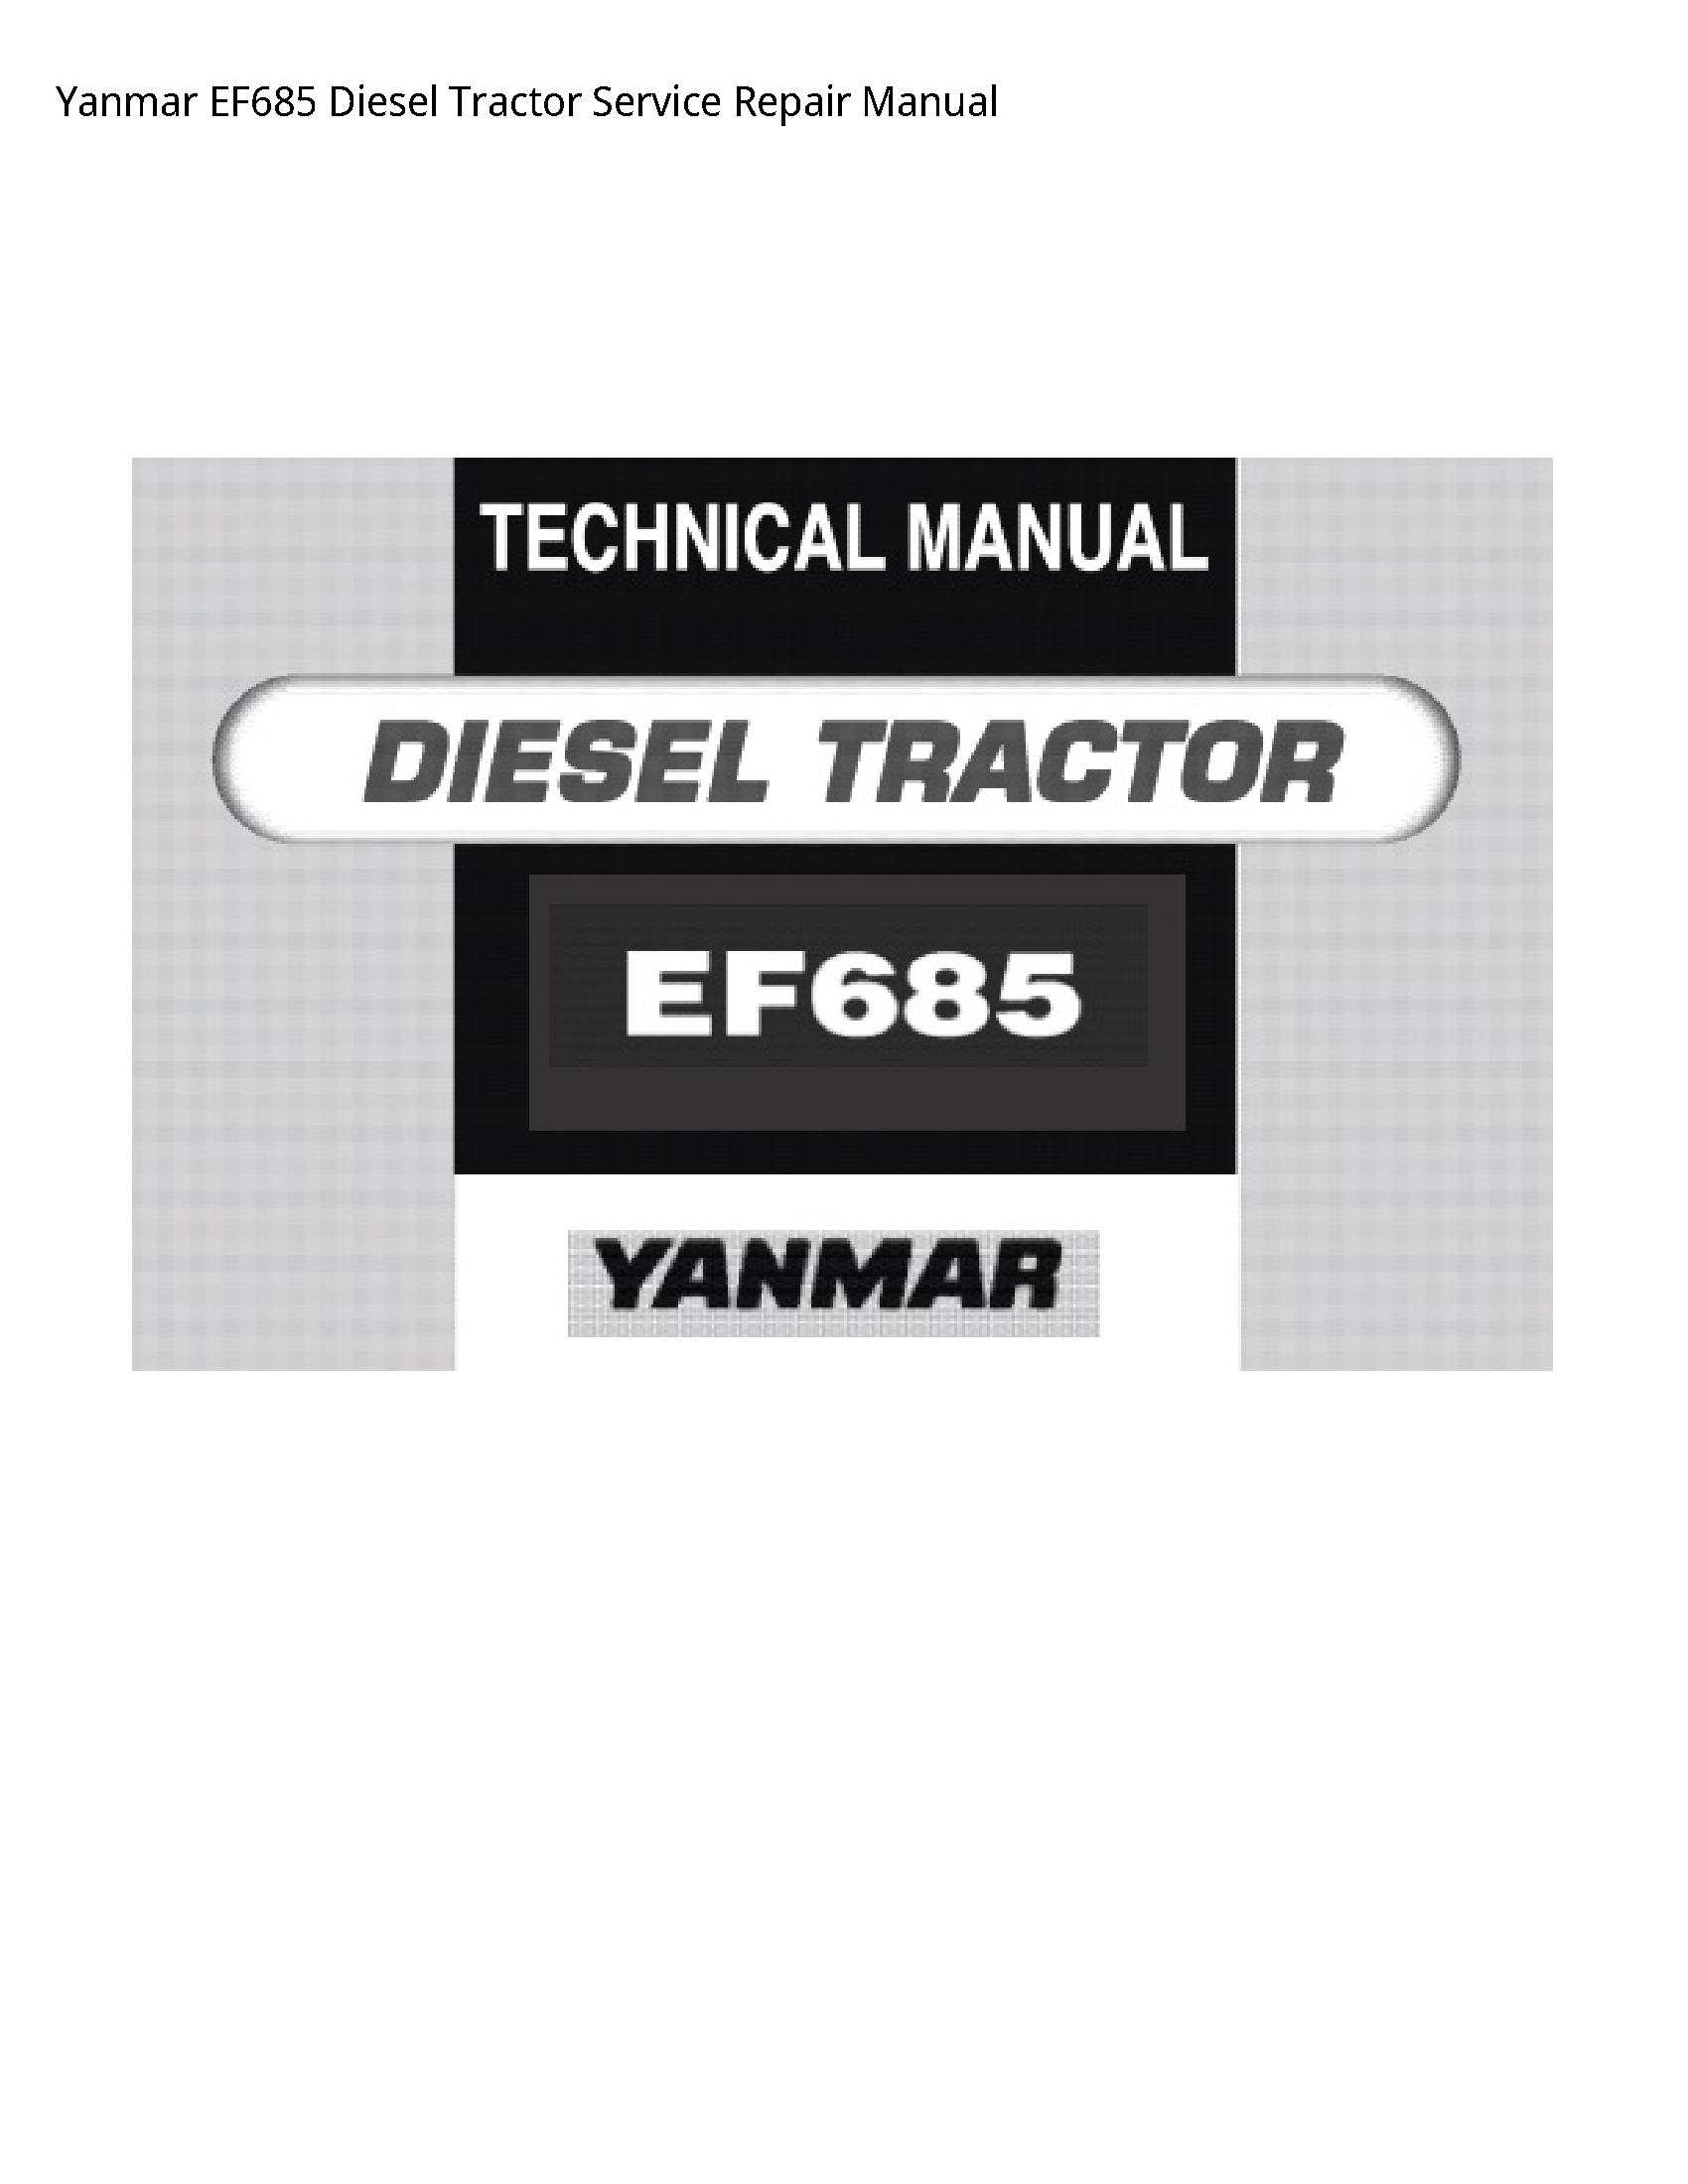 Yanmar EF685 Diesel Tractor manual